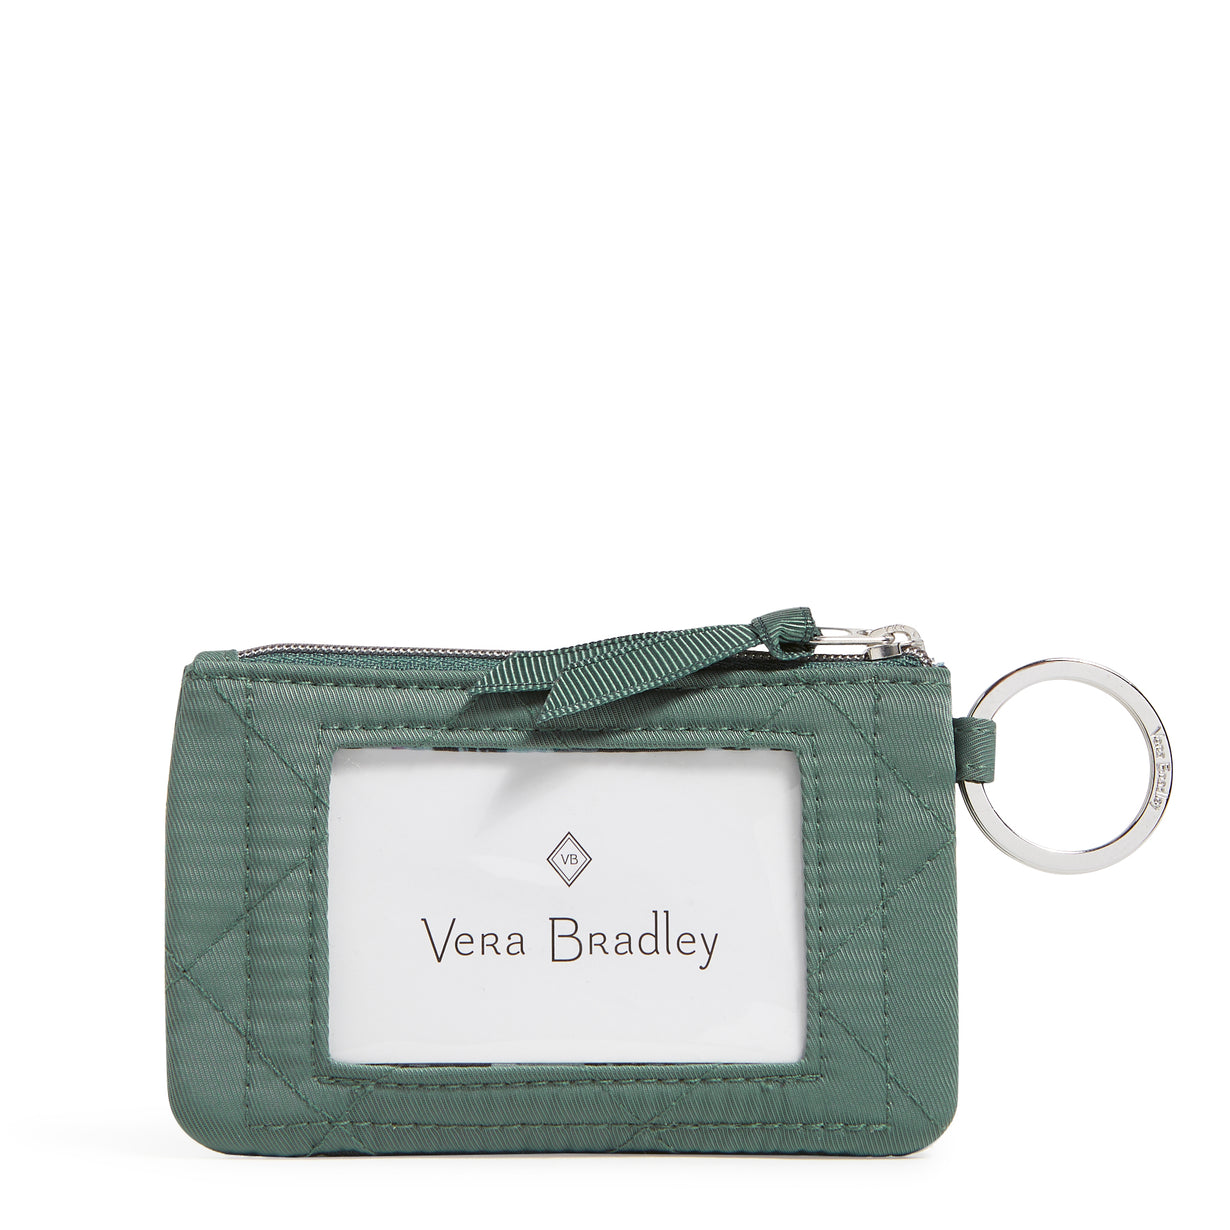 Vera Bradley Zip ID Case Front Window In Olive Leaf Pattern